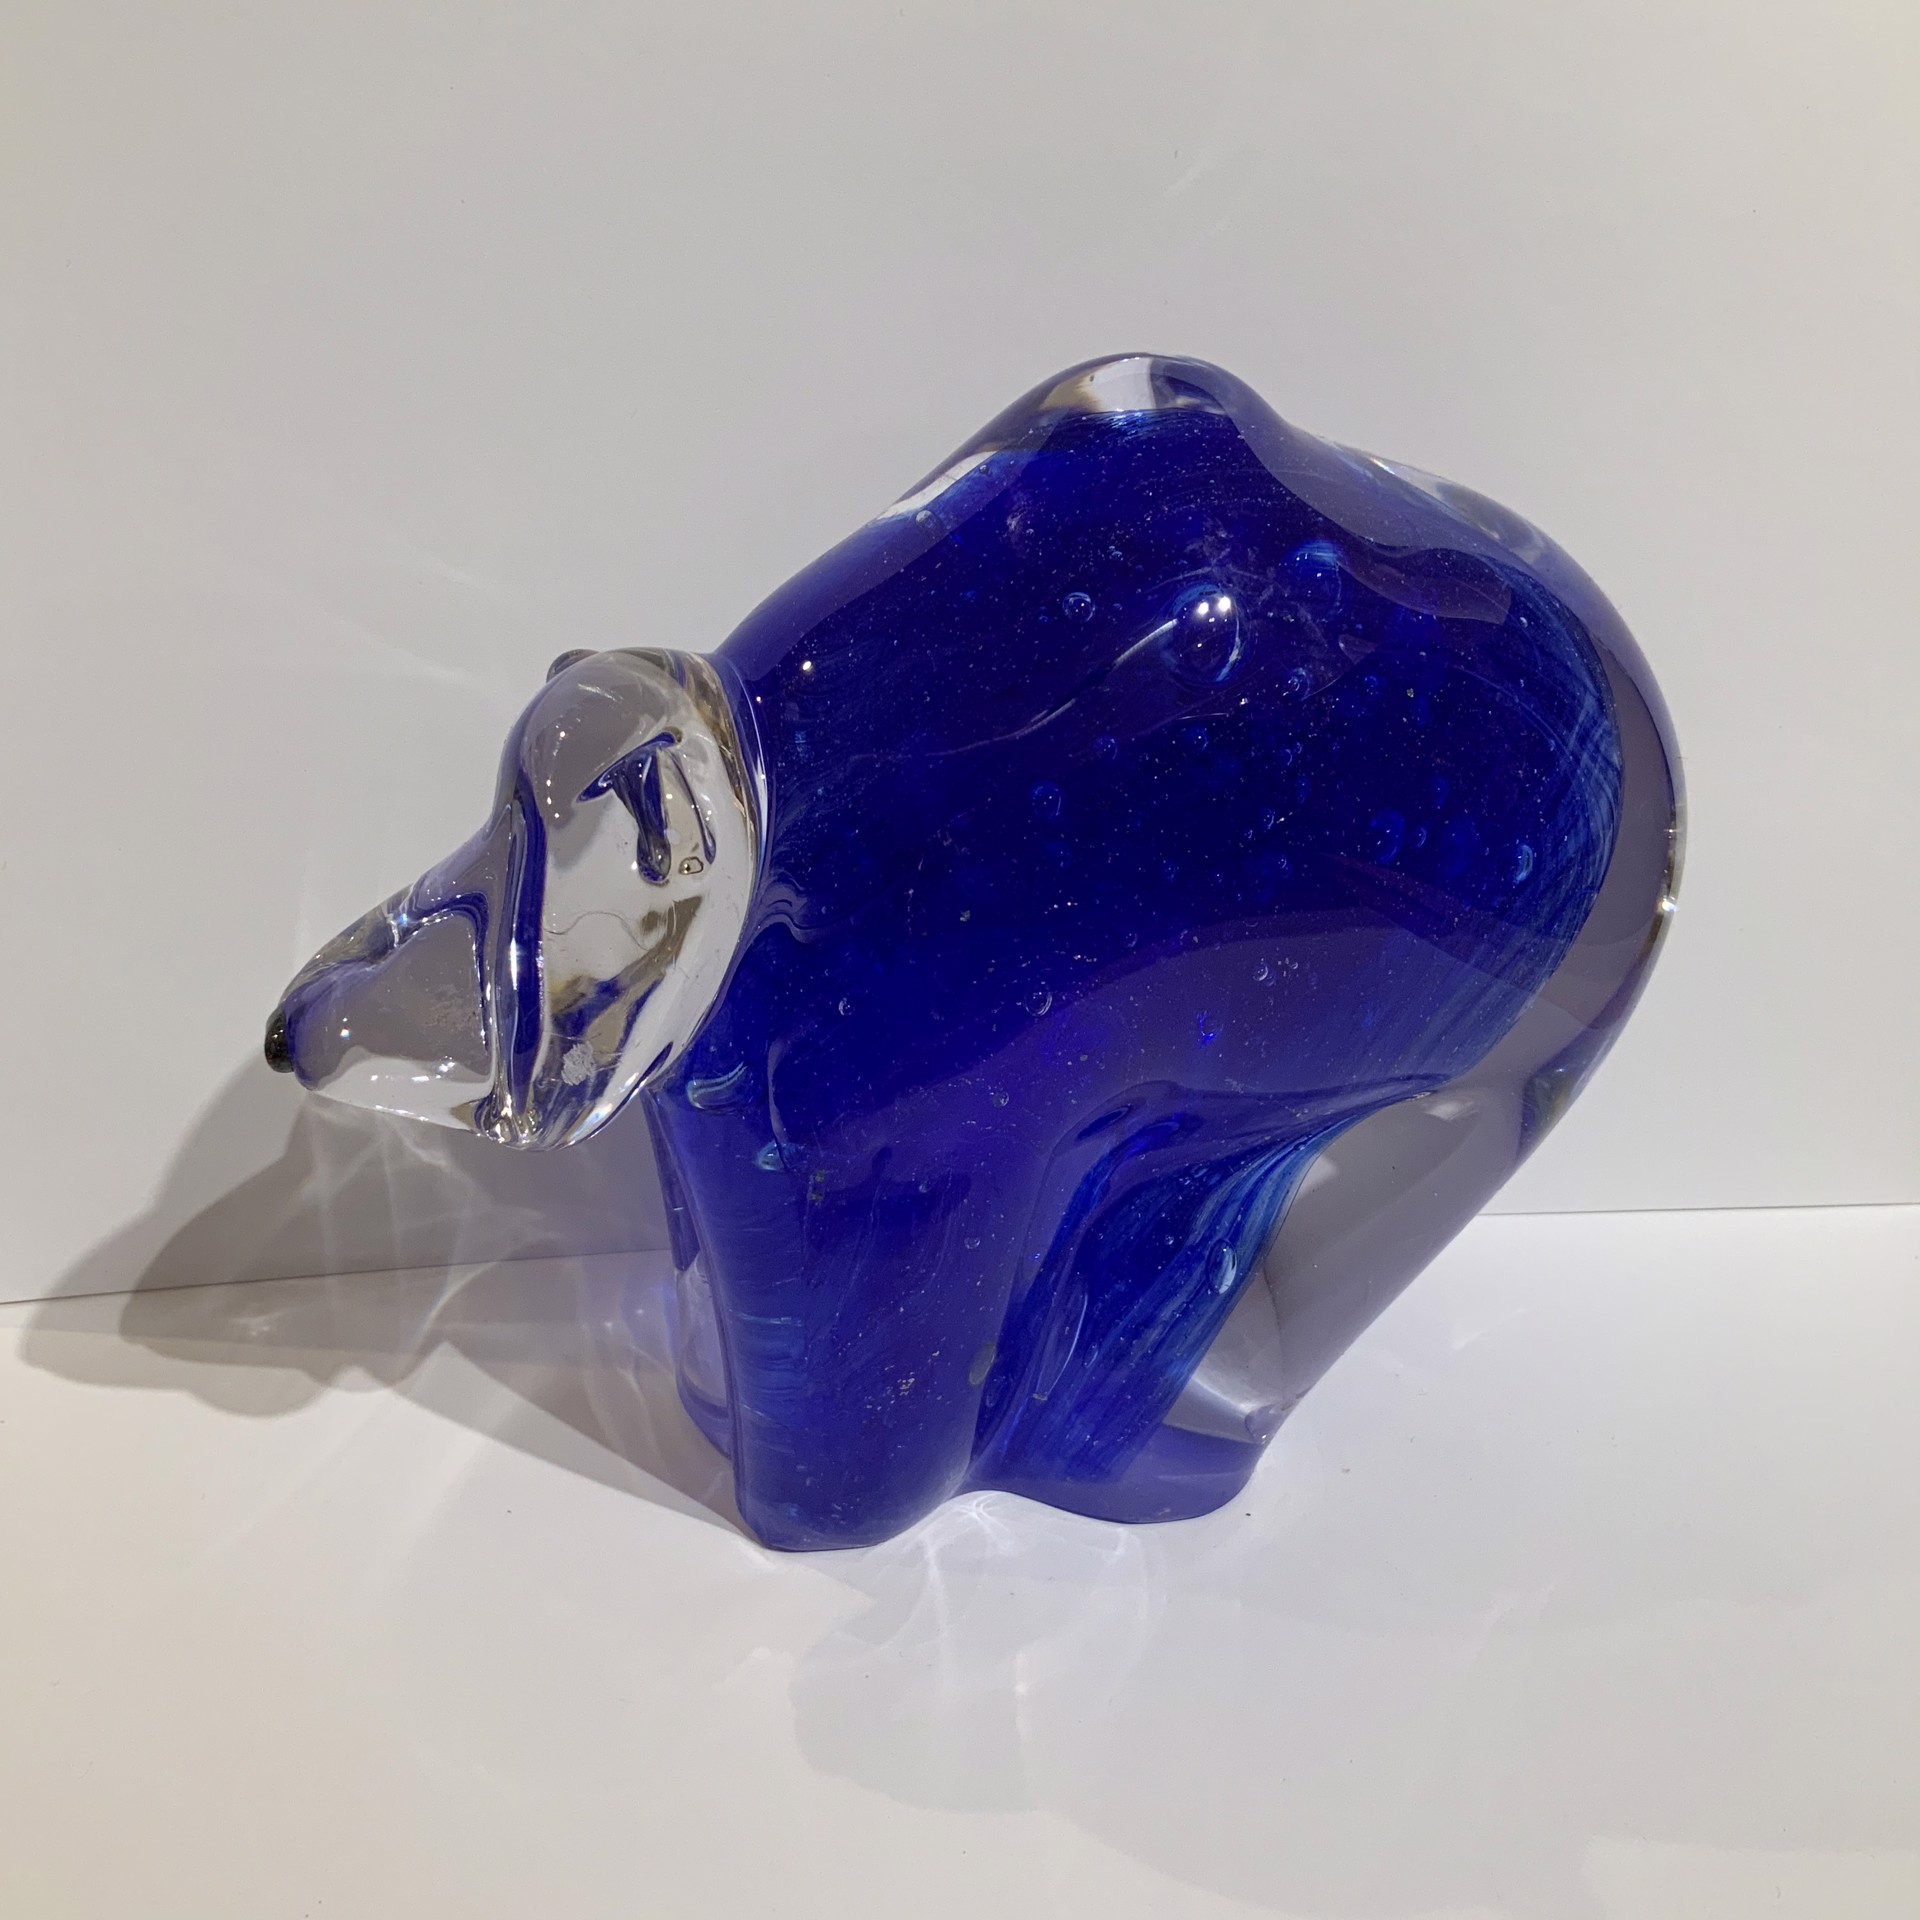 Glass Bear Blue #4 by Hayden MacRae